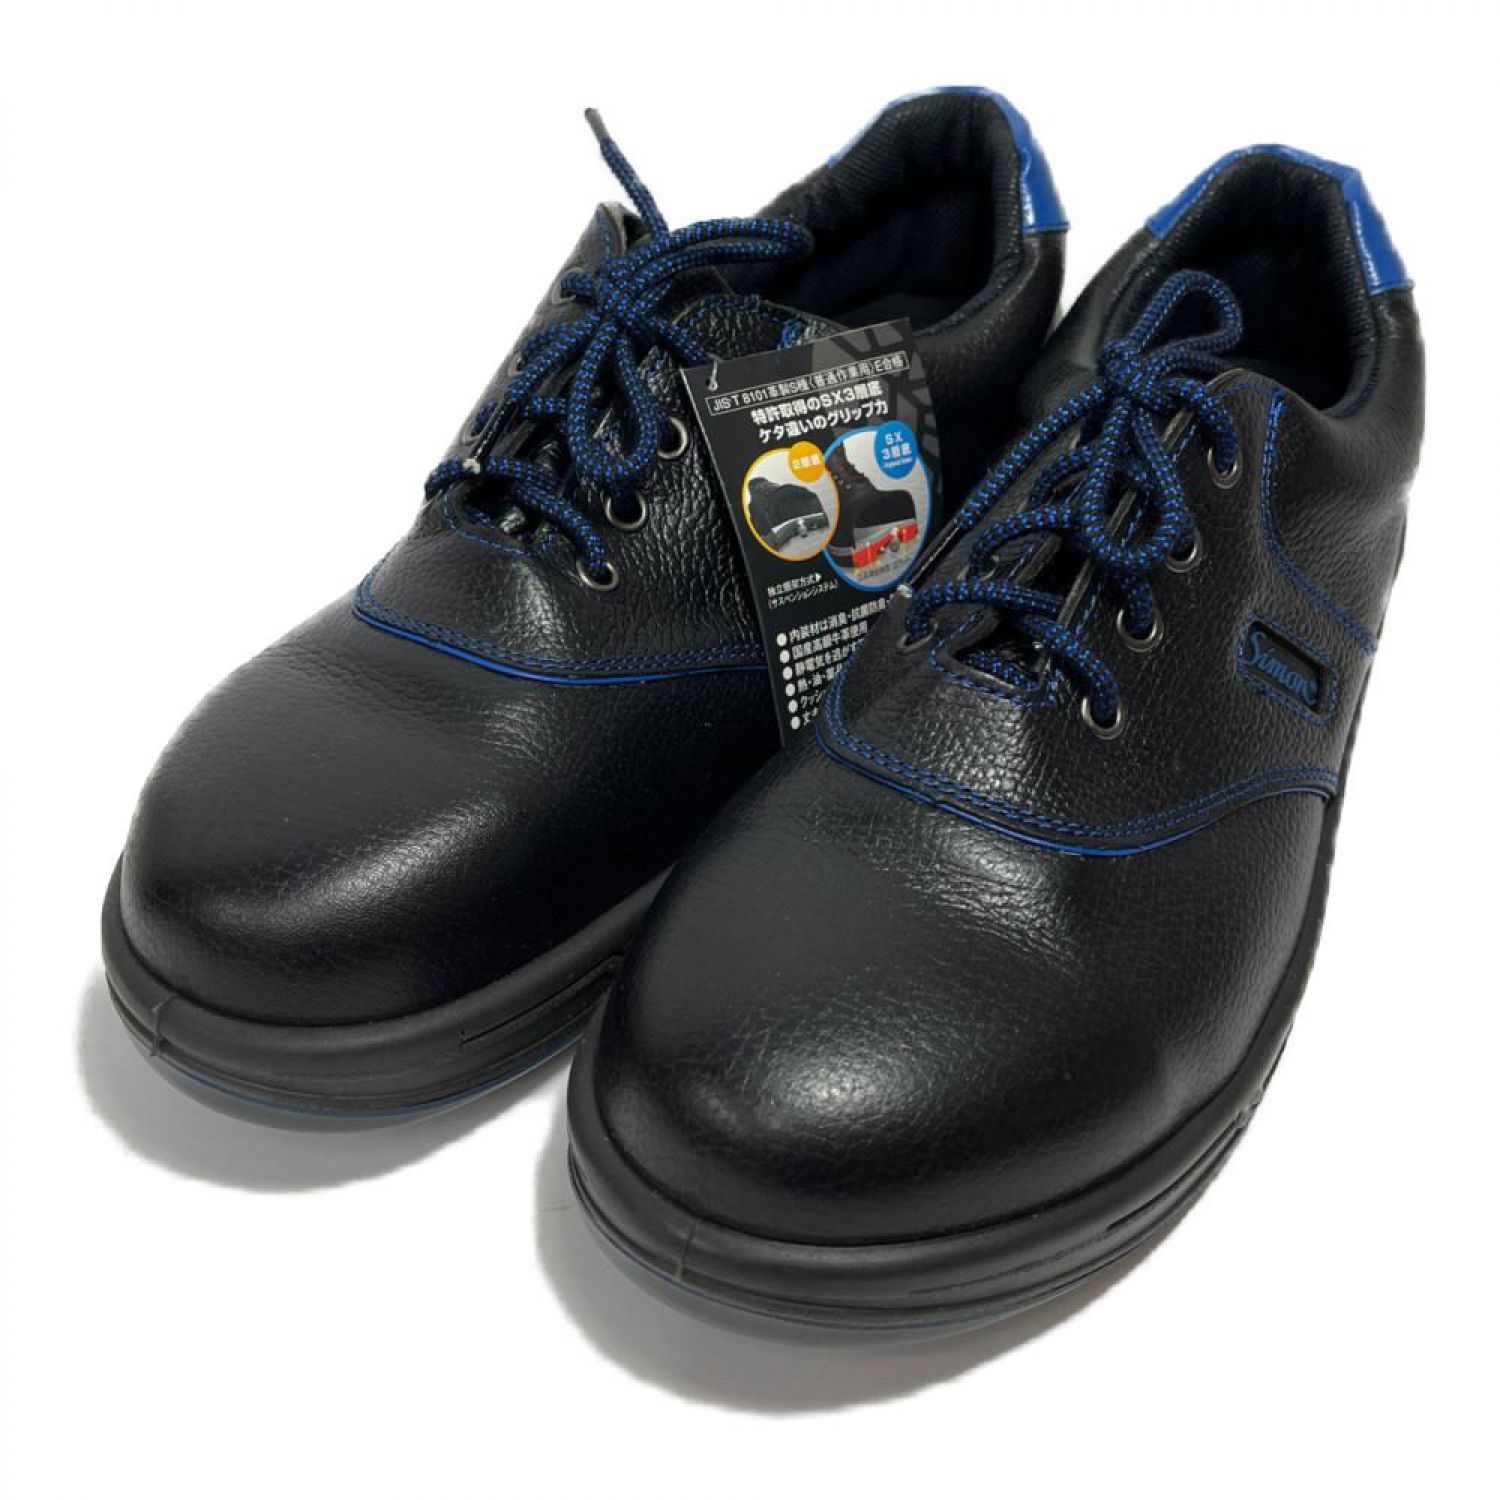 シモン 安全靴 SL11-BL 黒/ブルー 26.5cm【取寄商品】-